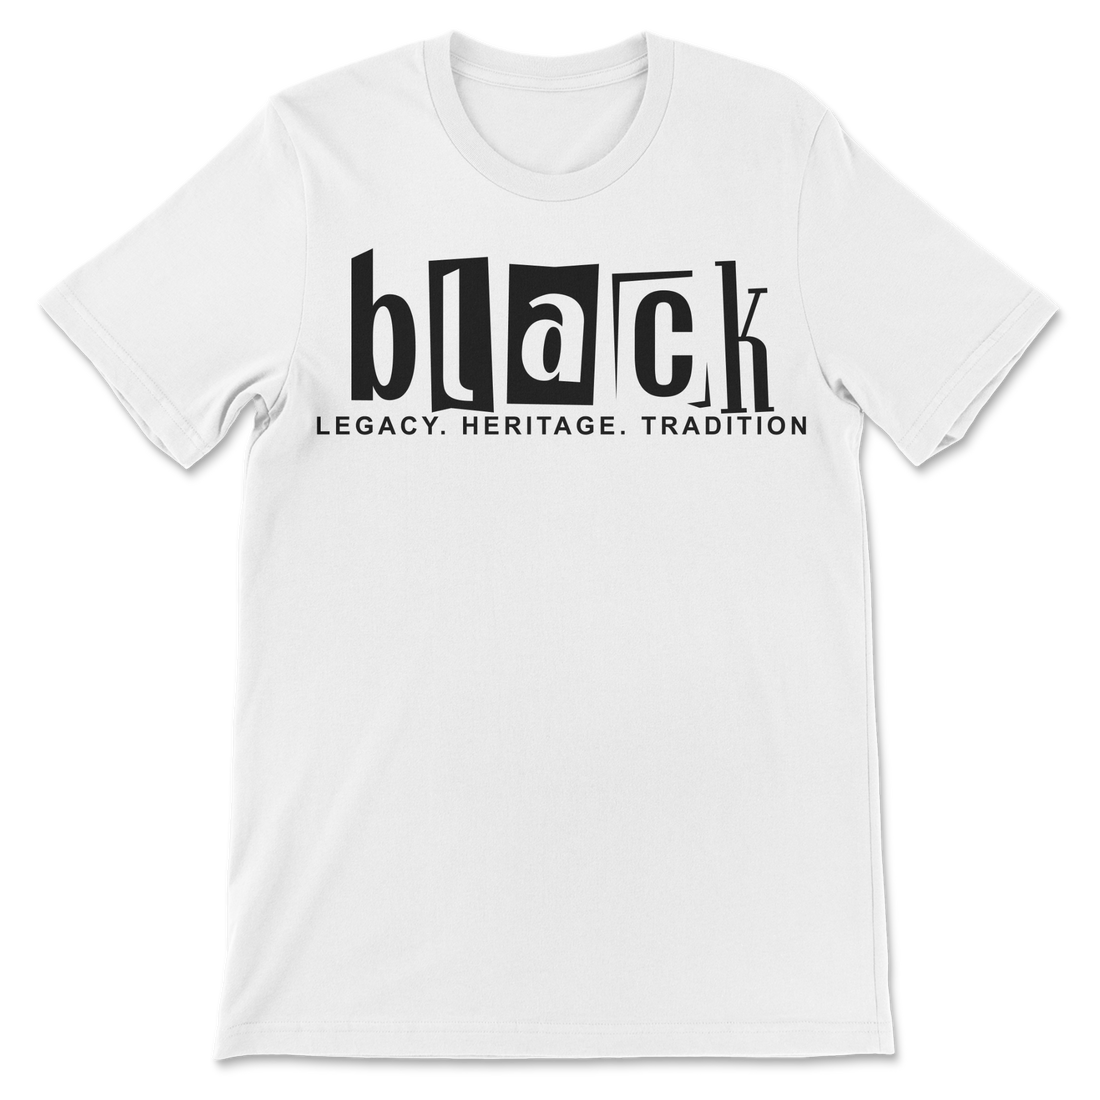 Celebrate Black Legacy, Heritage, Tradition Unisex Tee Shirt - Customization Option - Black or White